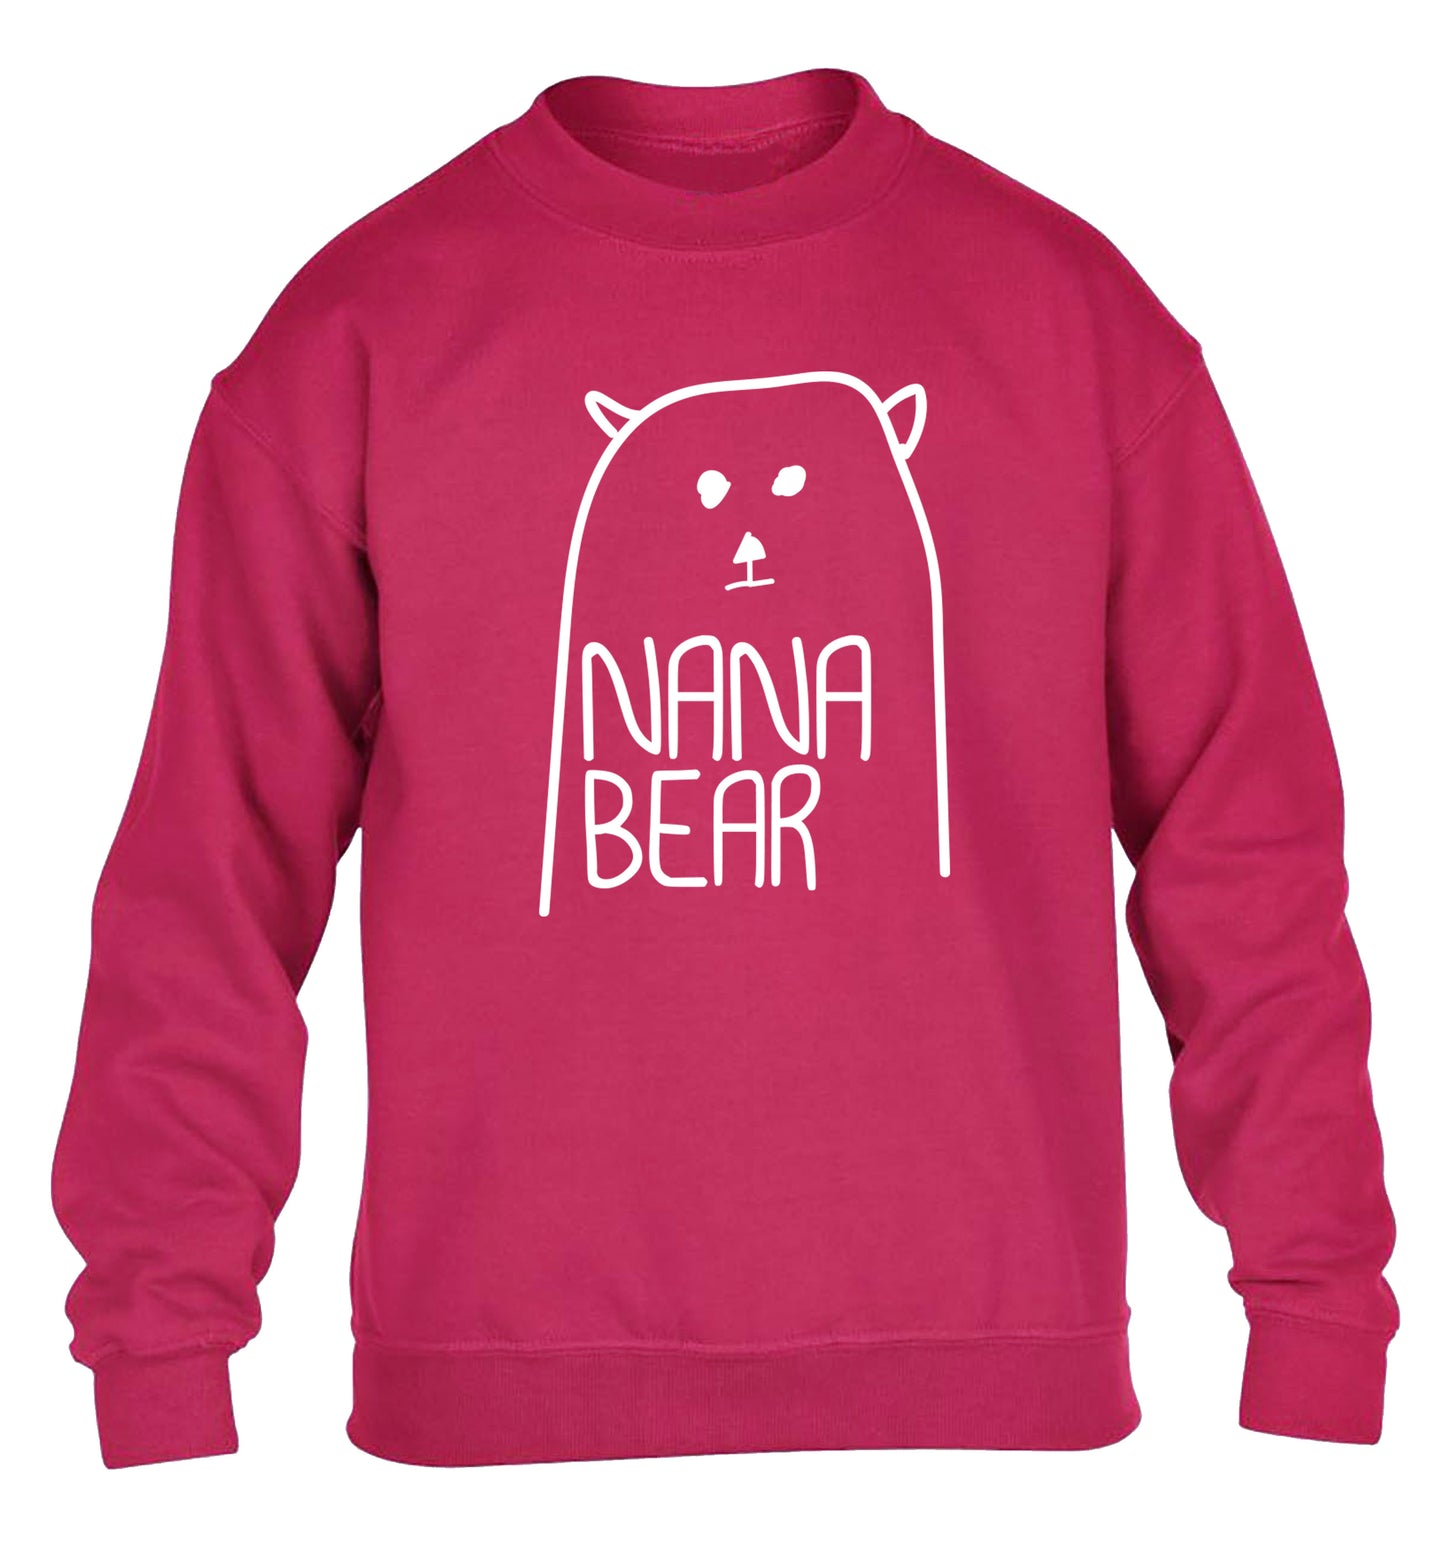 Nana bear children's pink sweater 12-13 Years